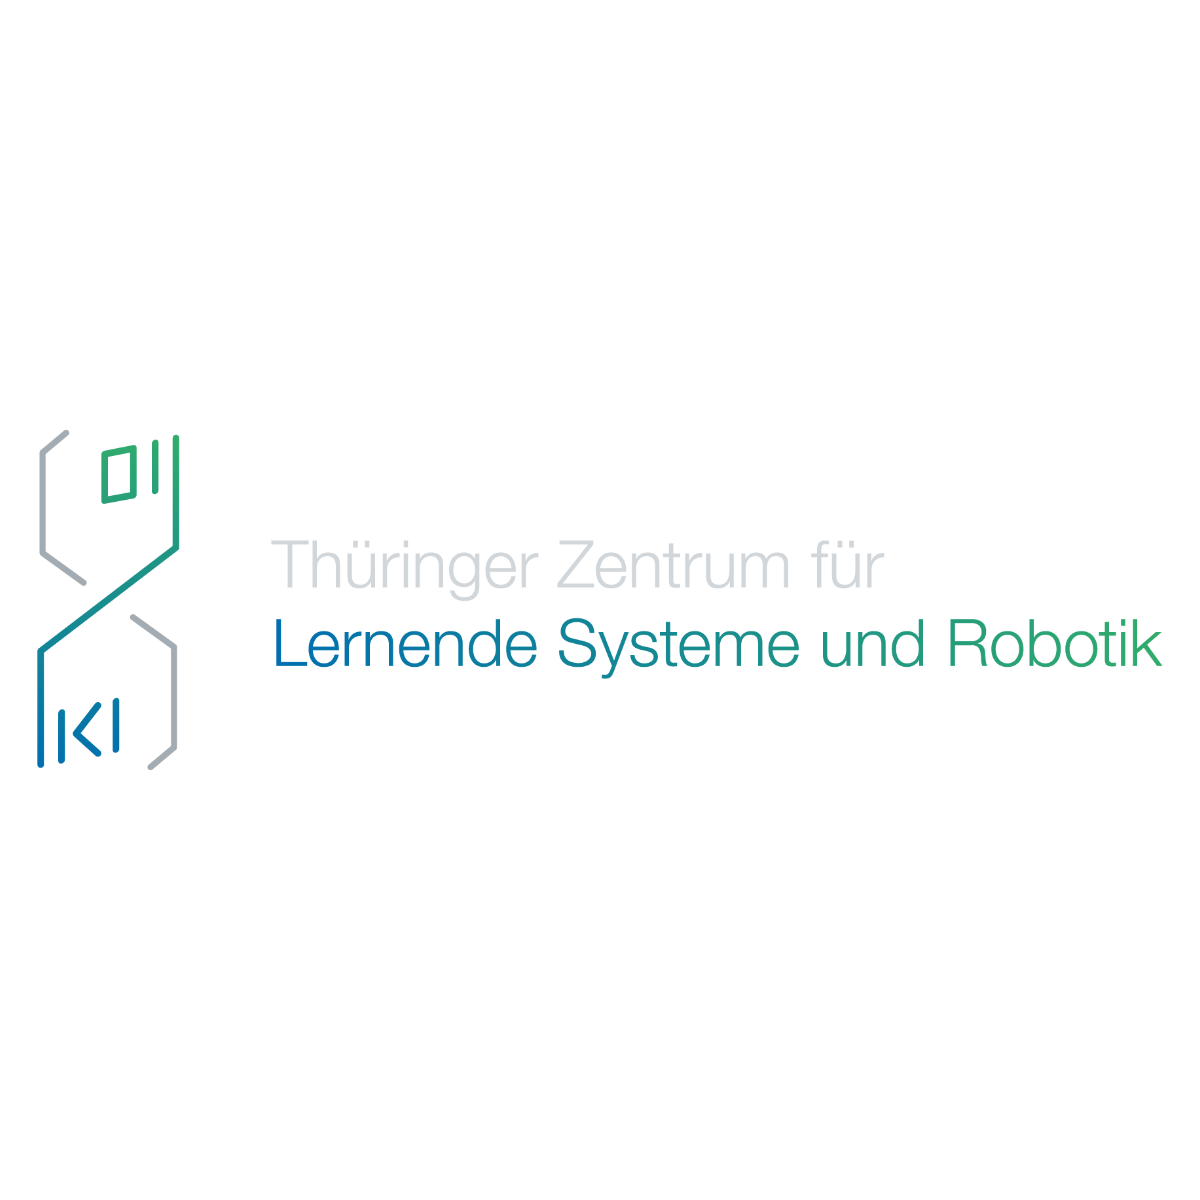 Thüringer Zentrum für Lernende Systeme und Robotik (TZLR)